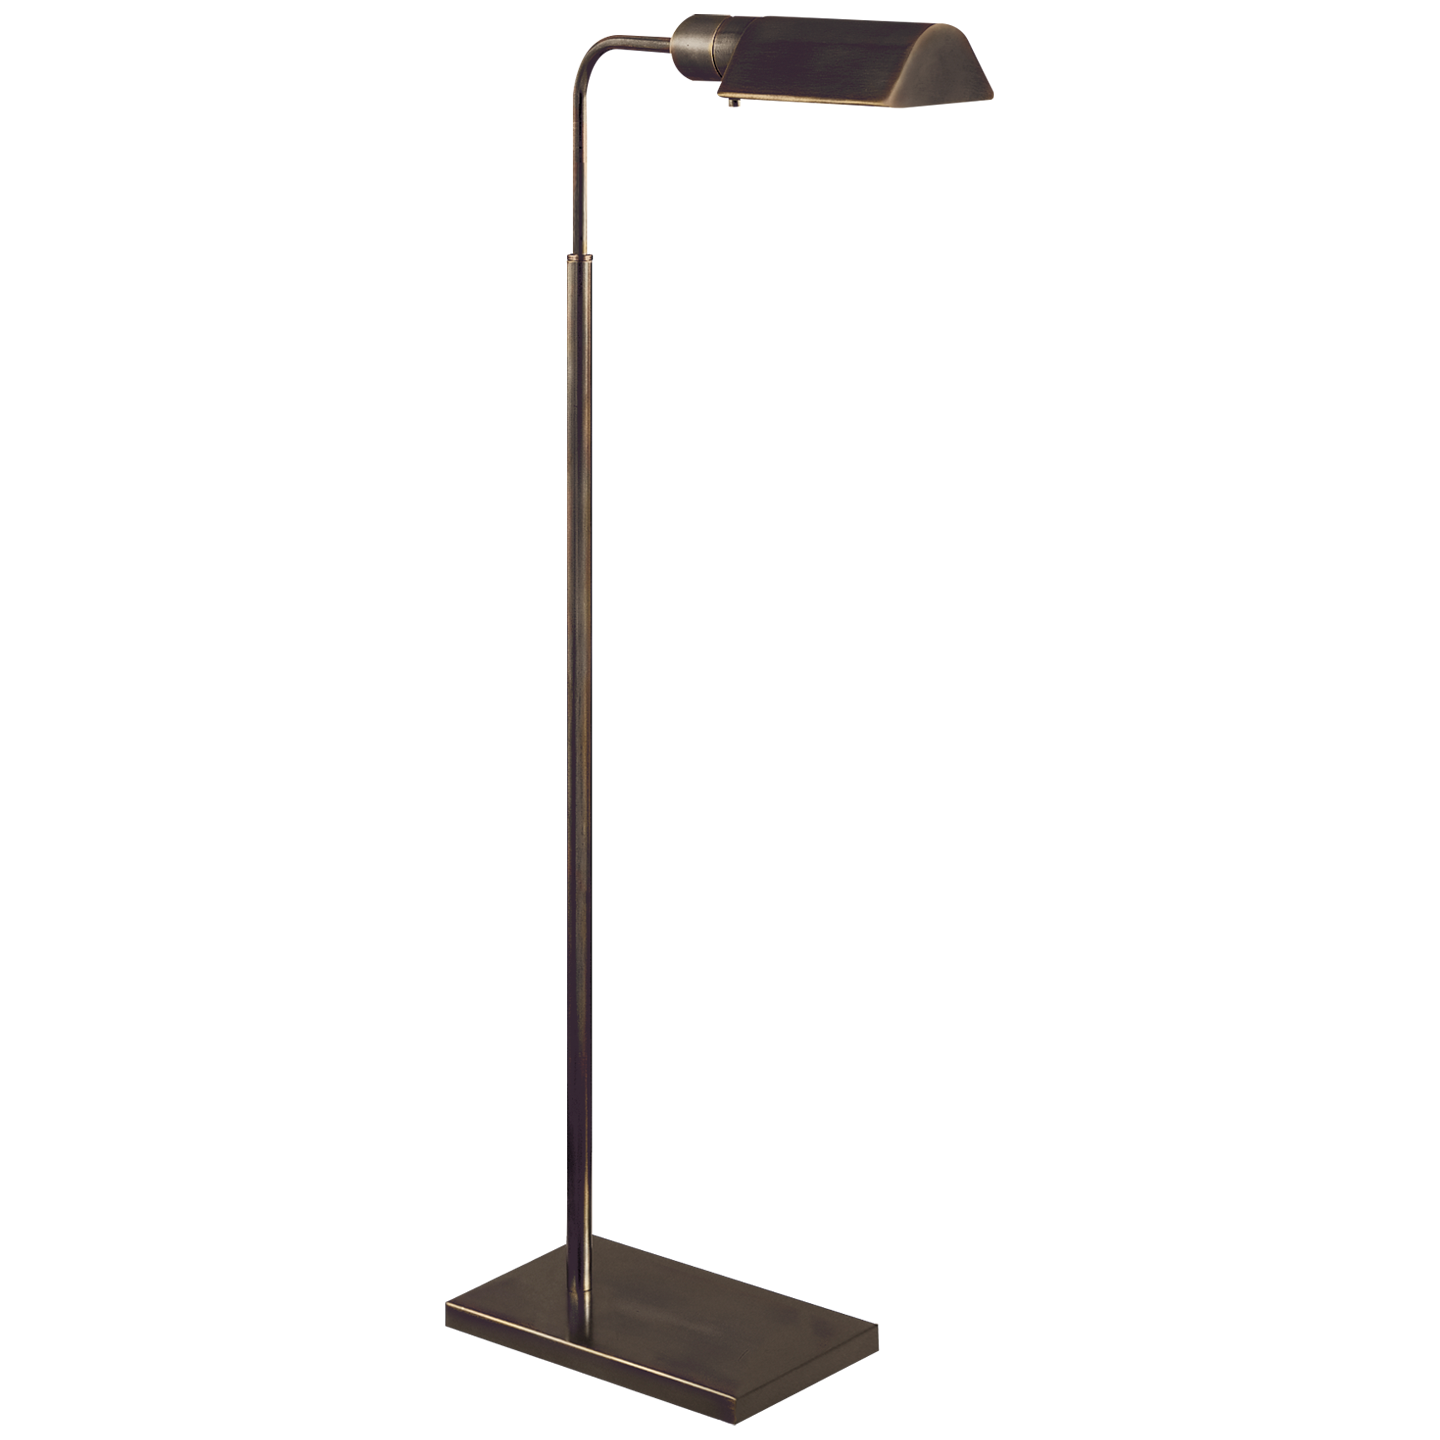 Visual Comfort & Co. | Studio Adjustable Floor Lamp | Laura Kincade Furniture | Sydney Australia